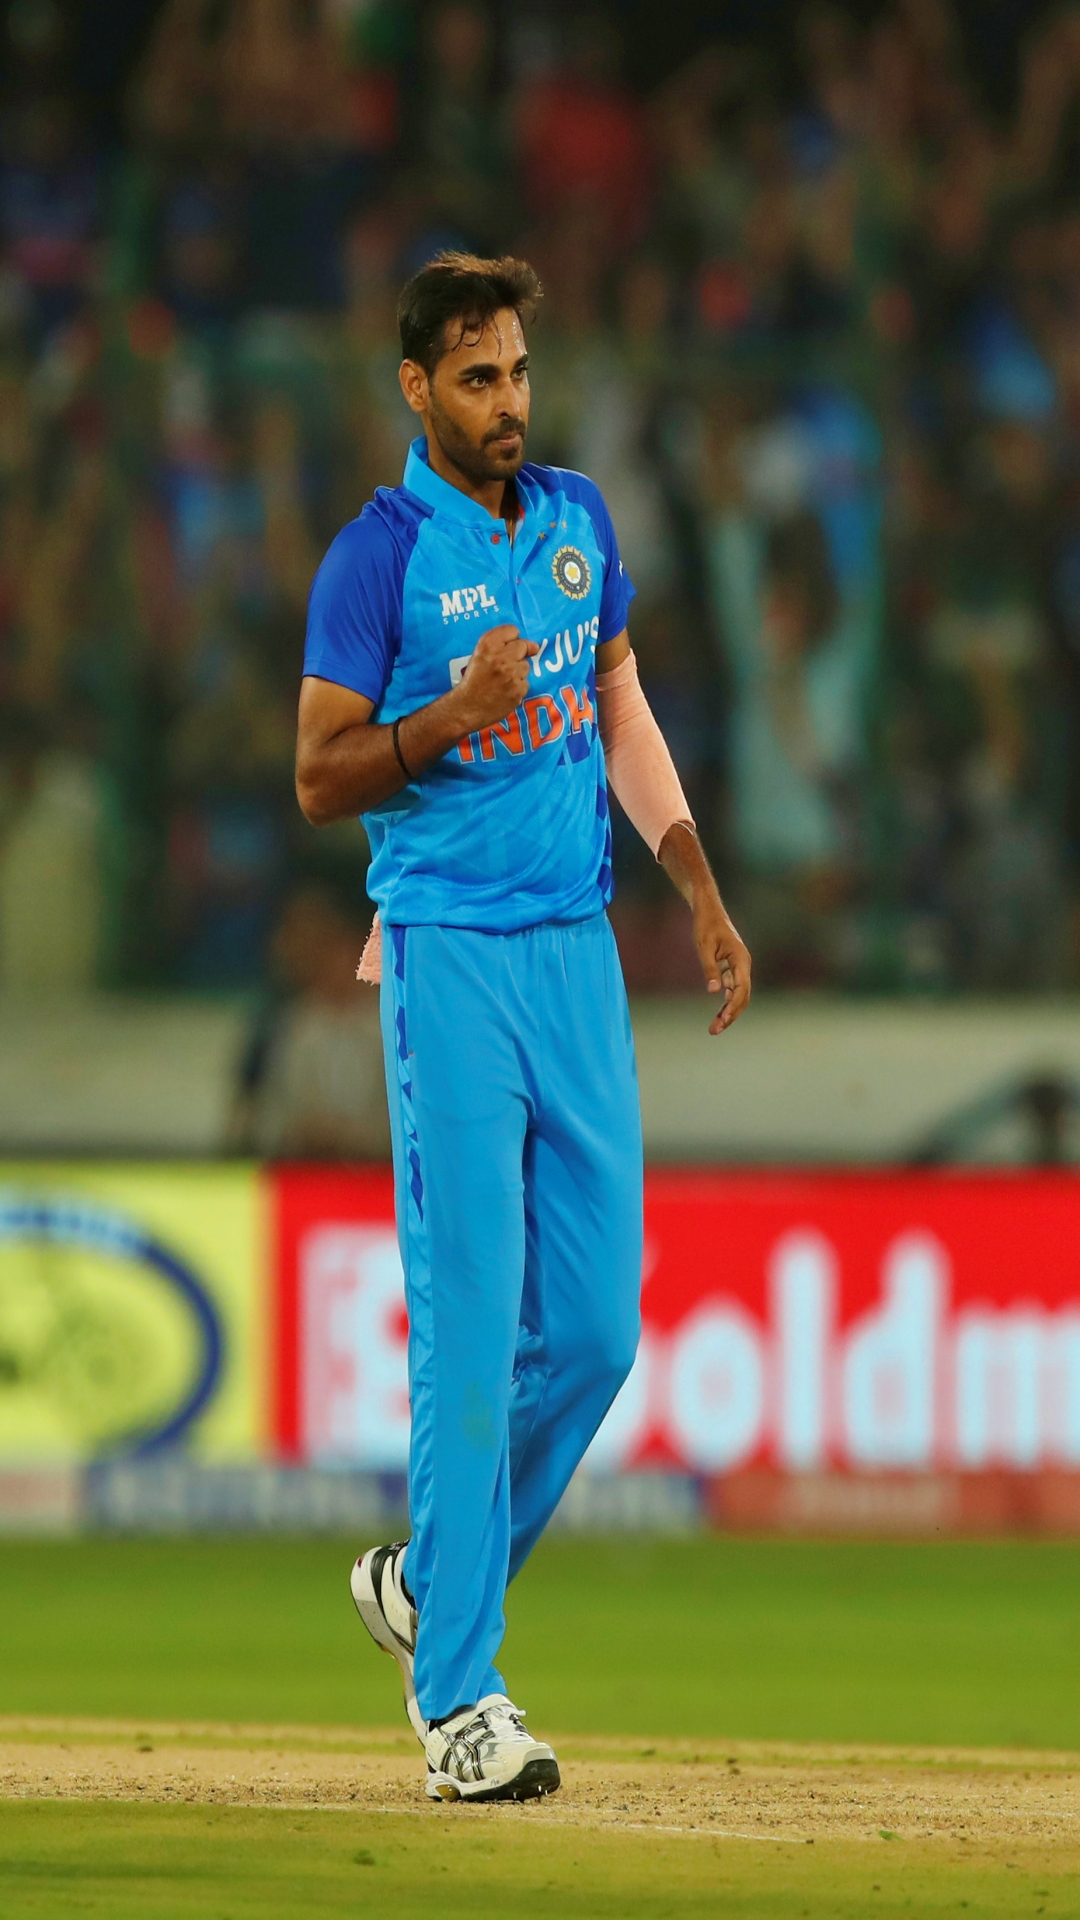 भारत के लिए इंटरनेशनल मैचों में करियर की पहली गेंद पर ही विकेट झटकने वाले खिलाड़ियों की लिस्ट